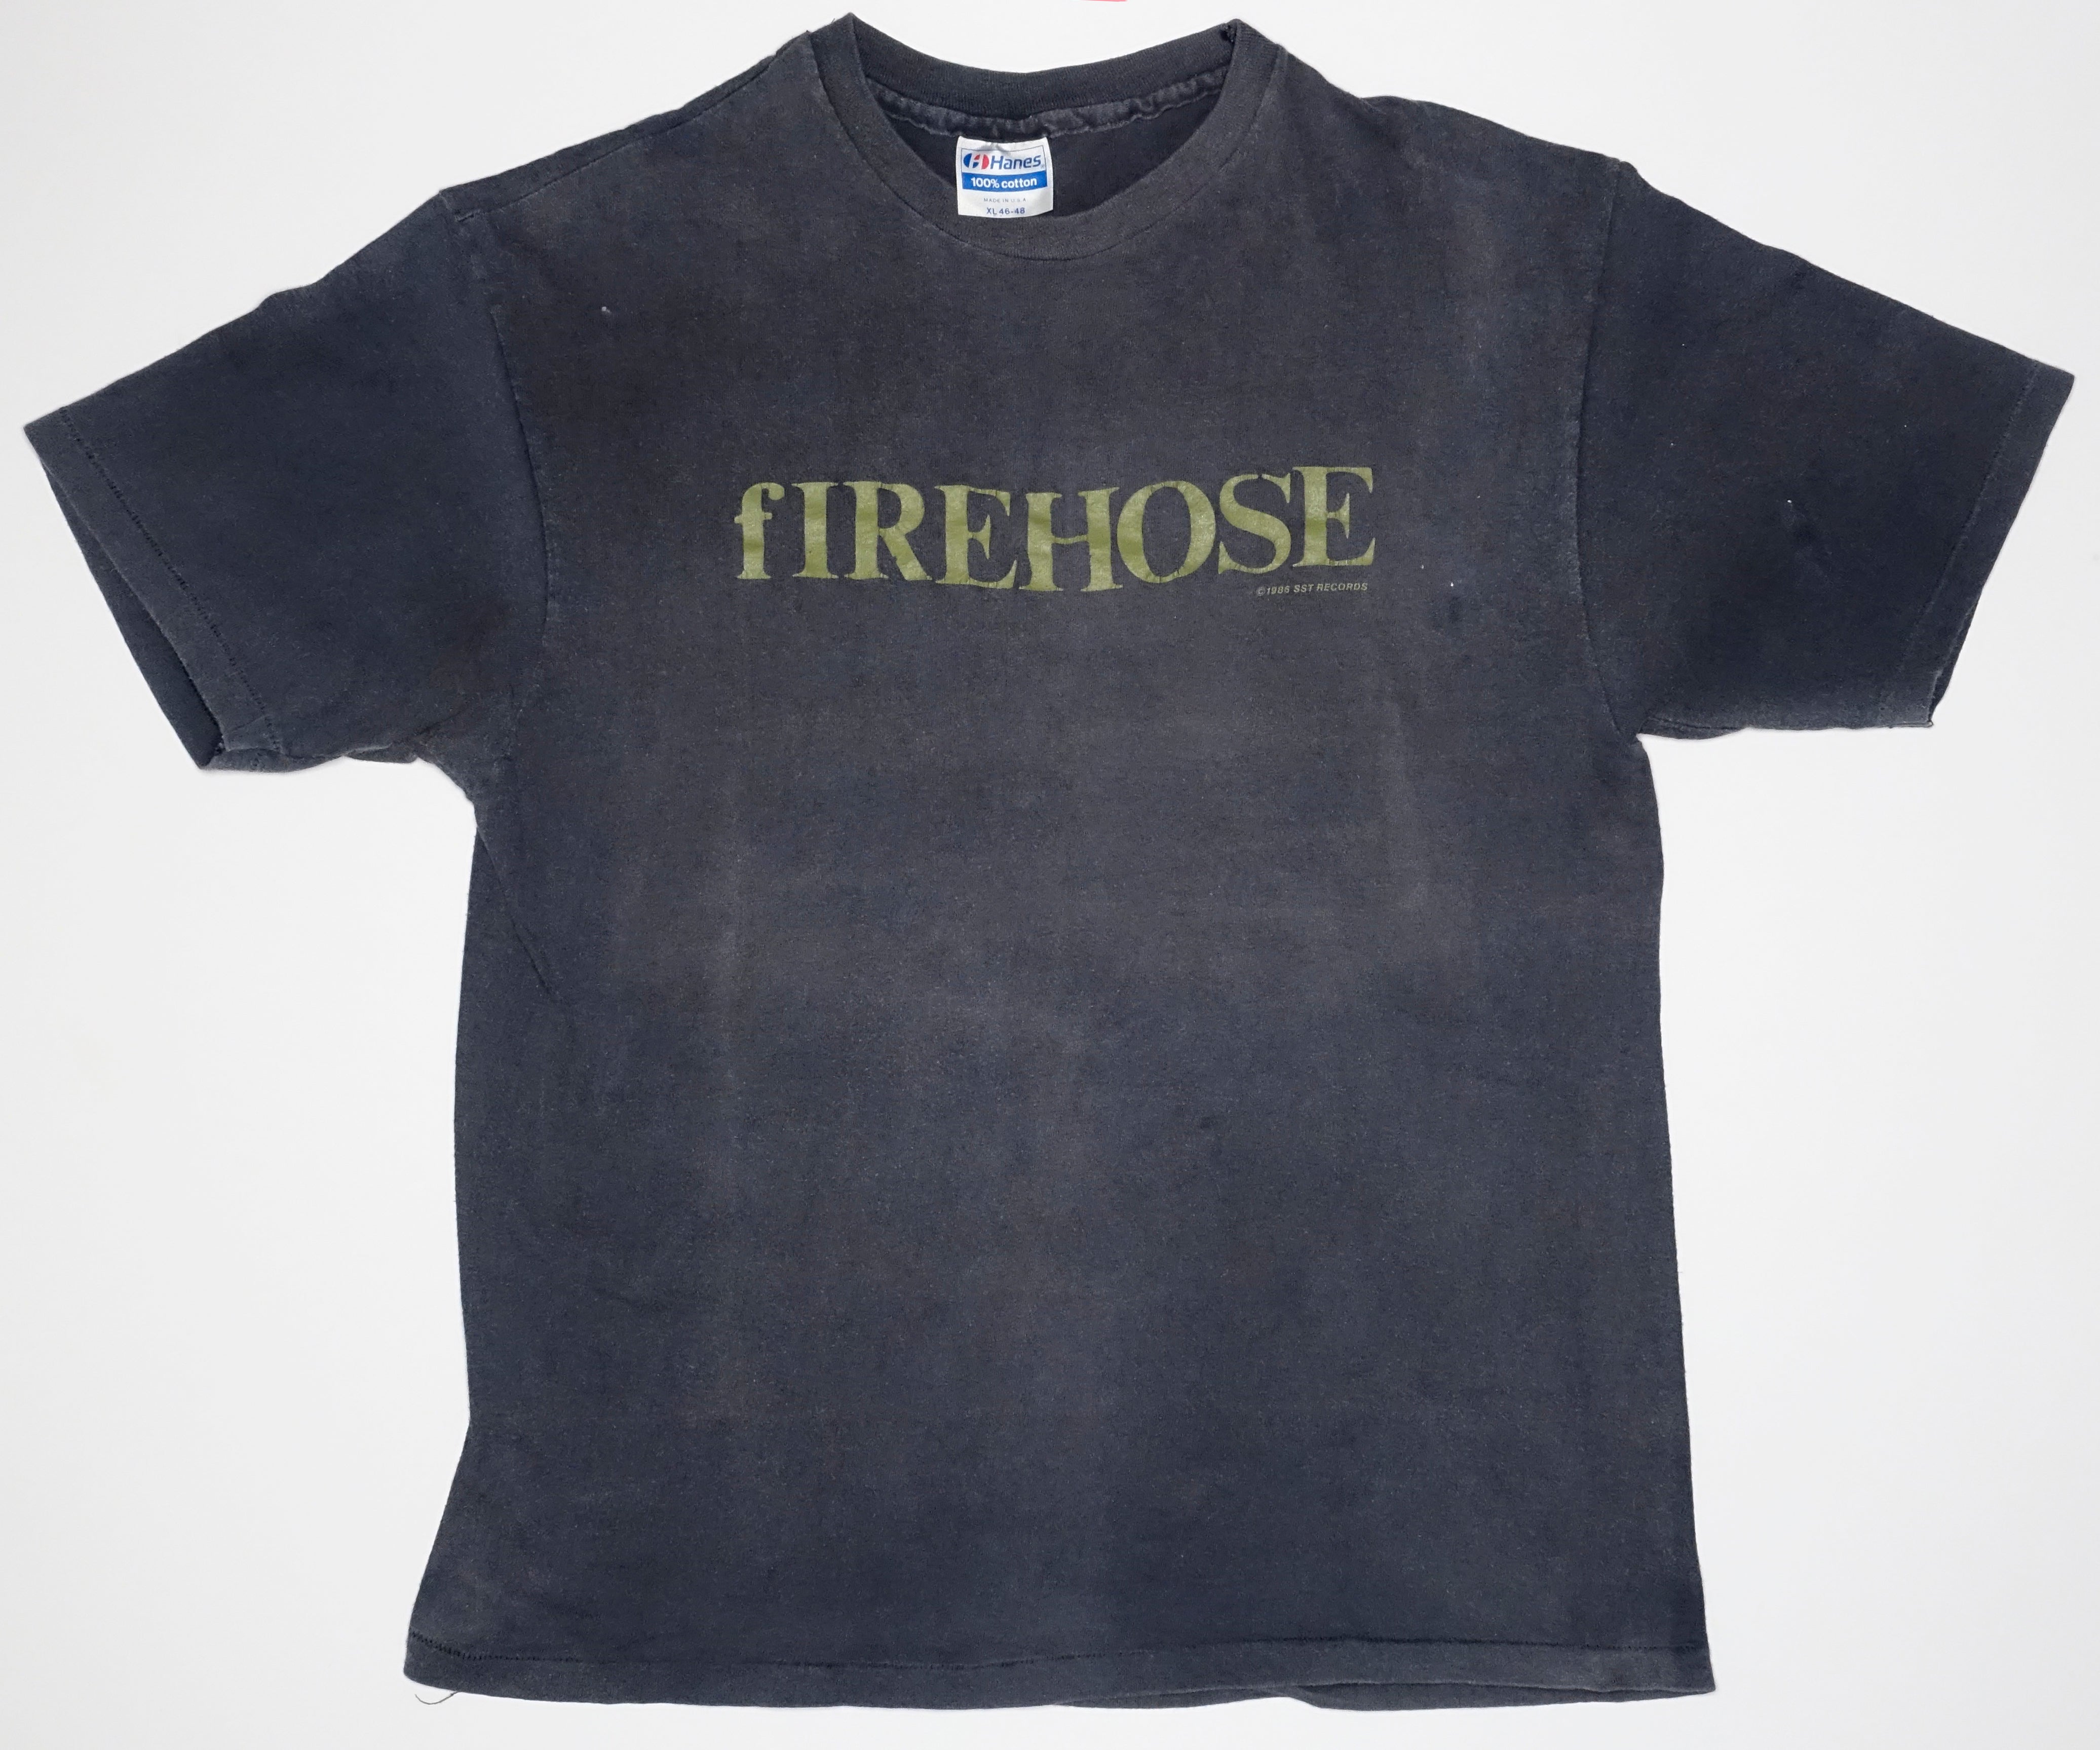 fIREHOSE - 1986 SST Tour Shirt Size Medium